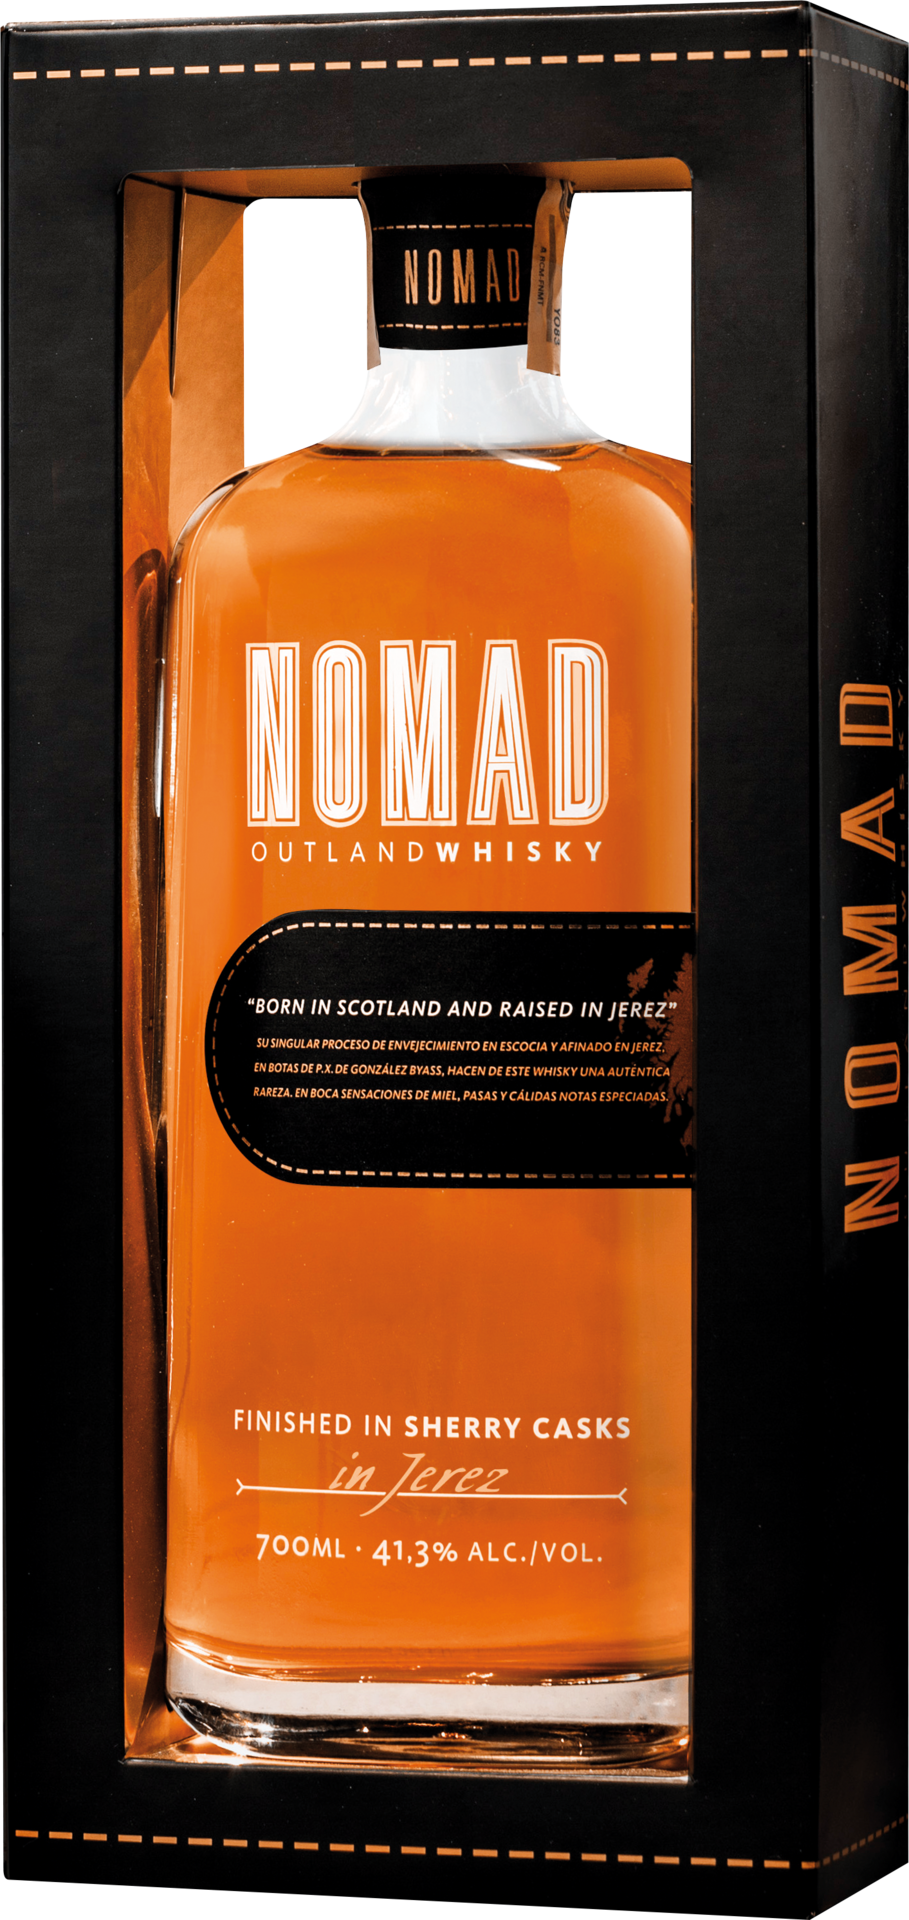 Nomad Whisky